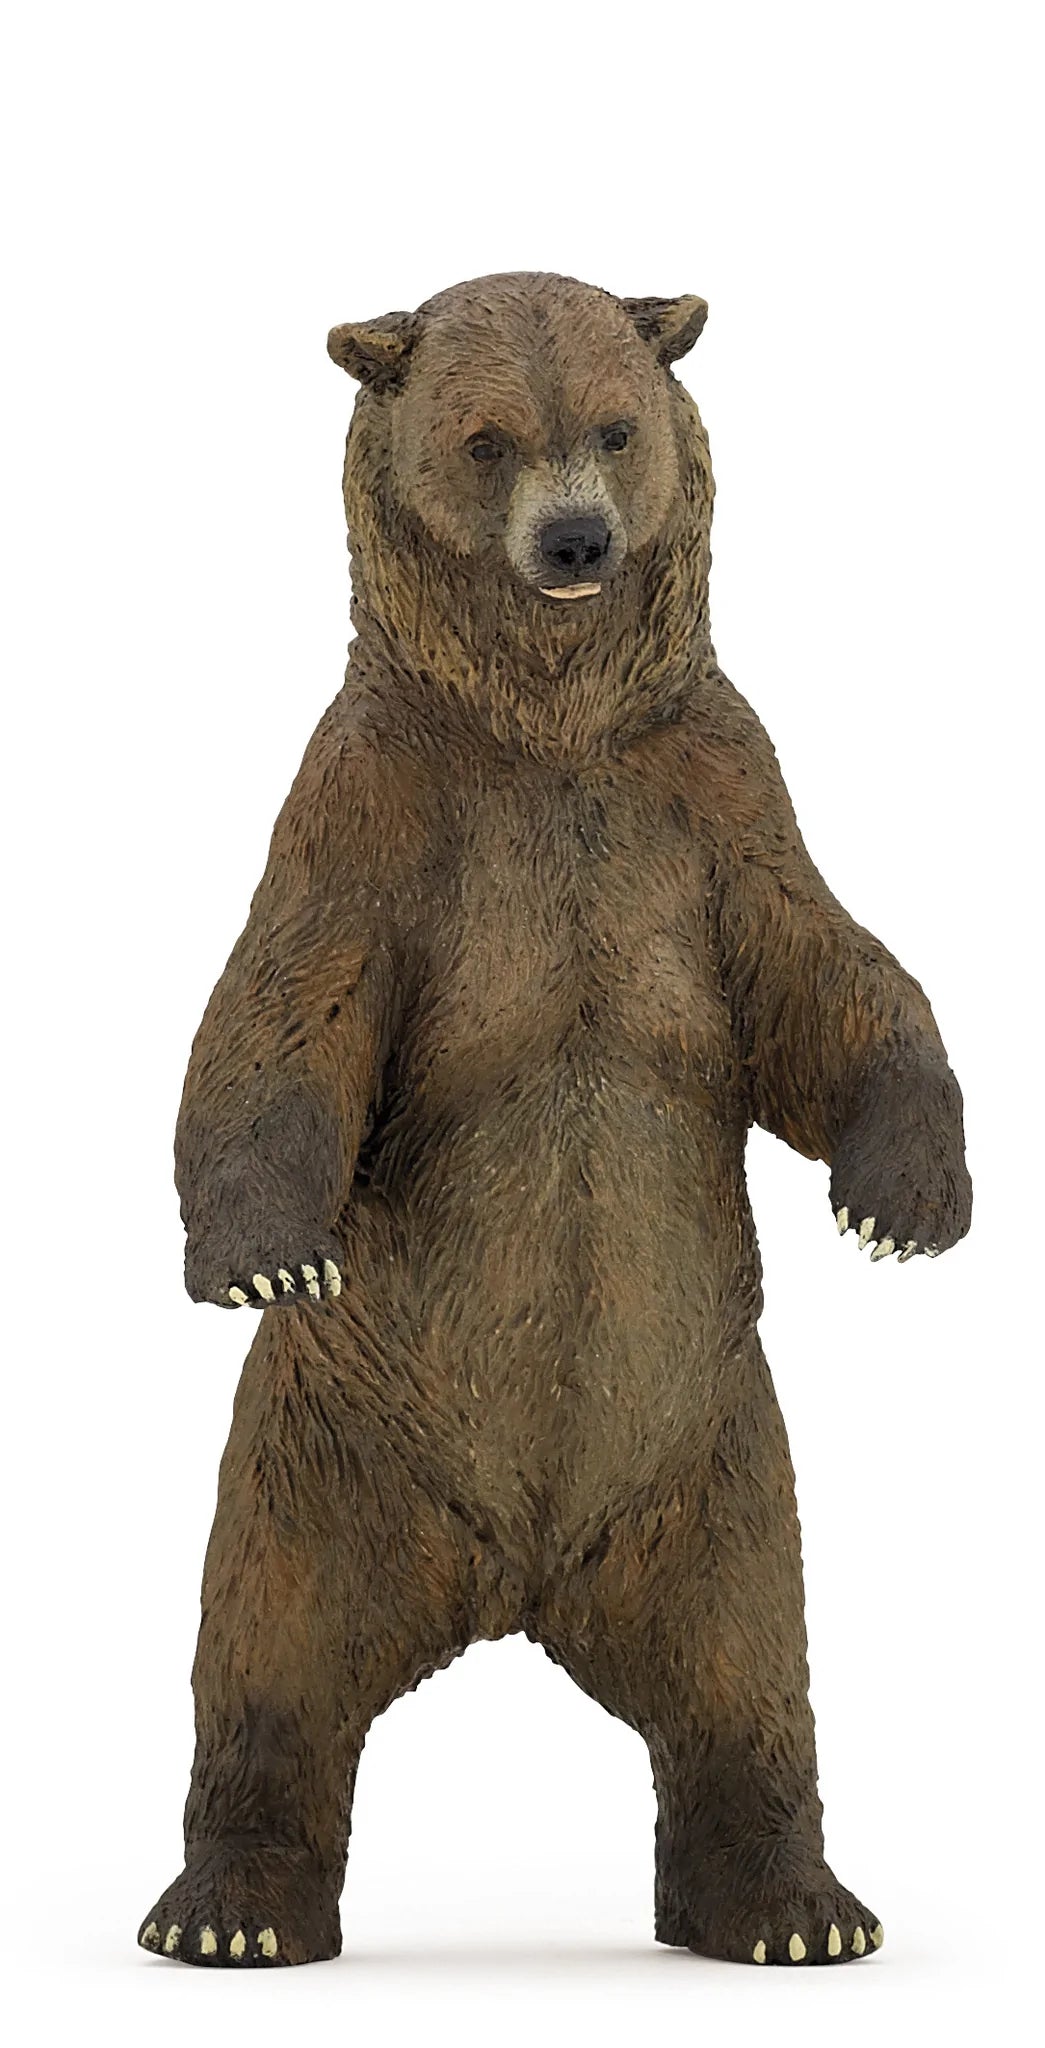 Figurine - Grizzly Bear